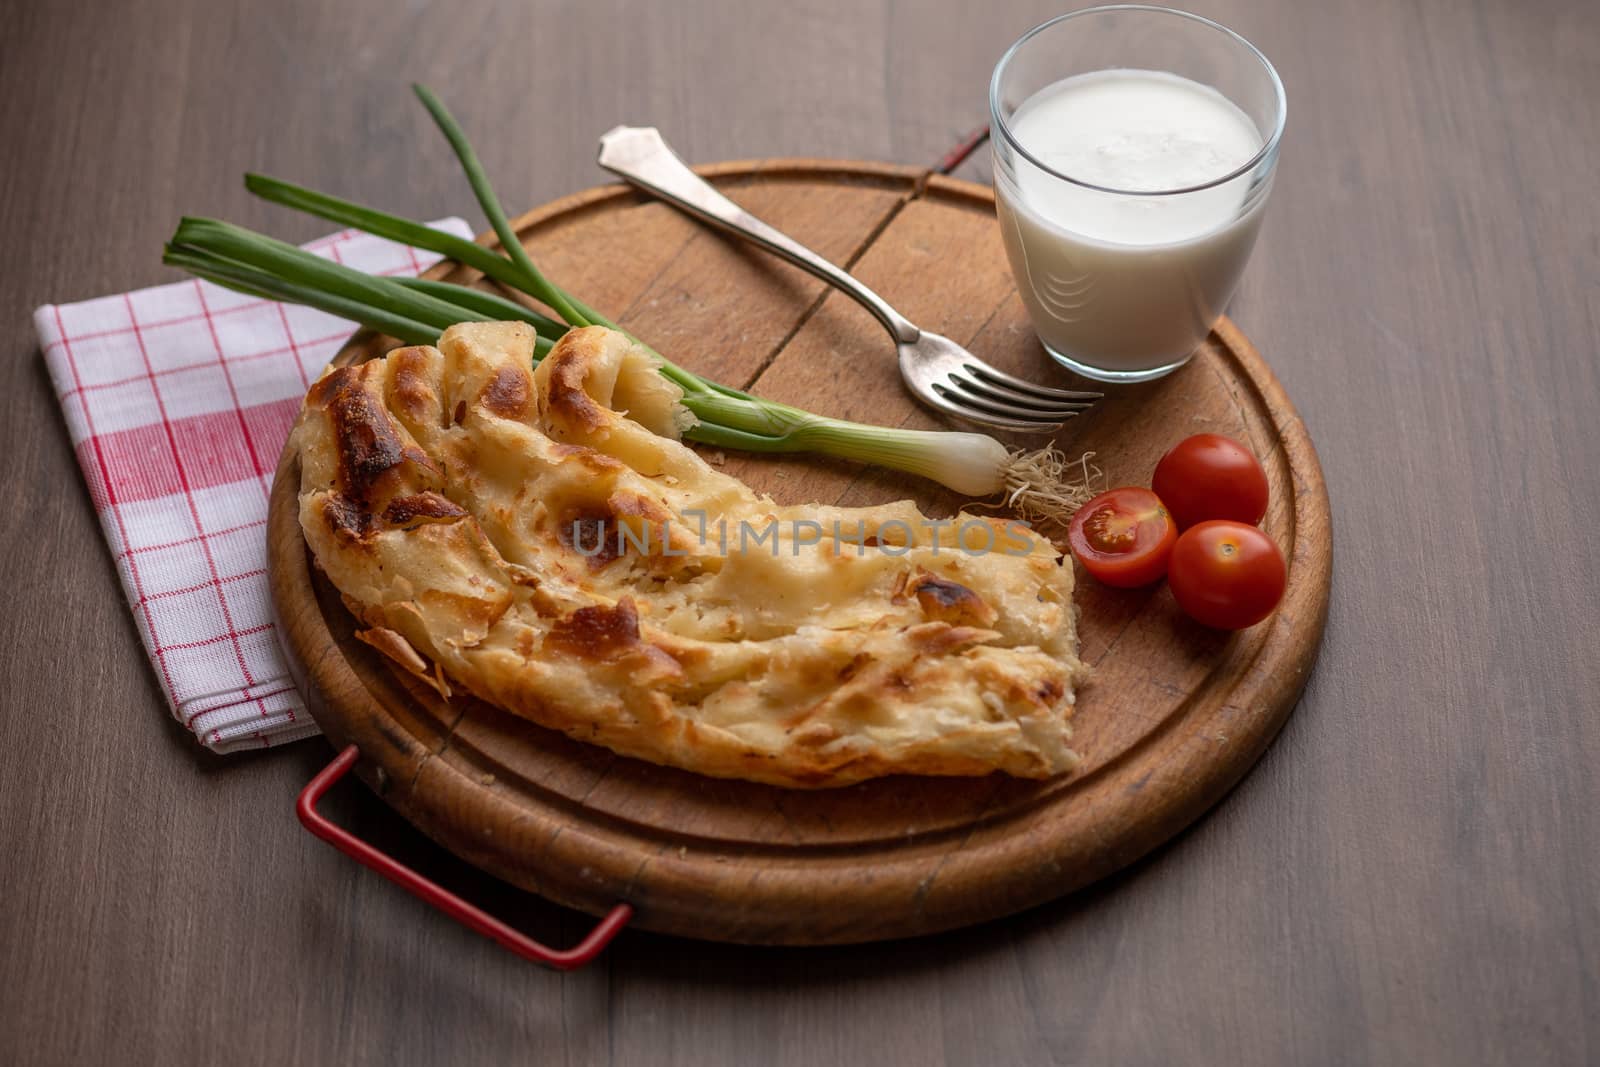 Traditional balkan meal - Burek or Borek pie with cheese by adamr